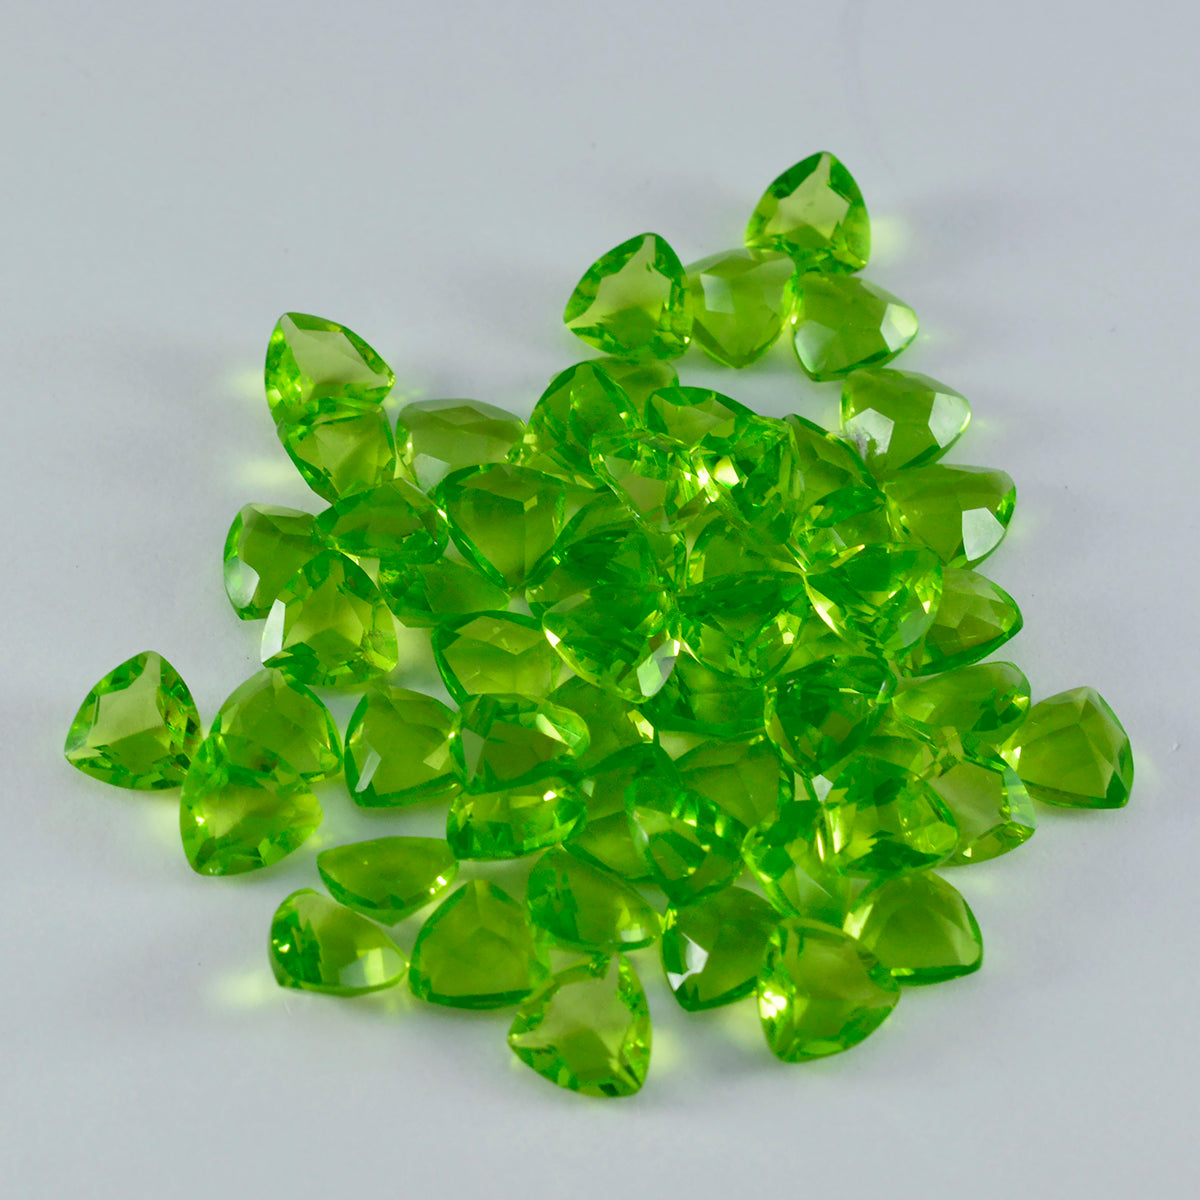 riyogems 1 шт. зеленый перидот cz граненый 6x6 мм форма триллиона камень удивительного качества